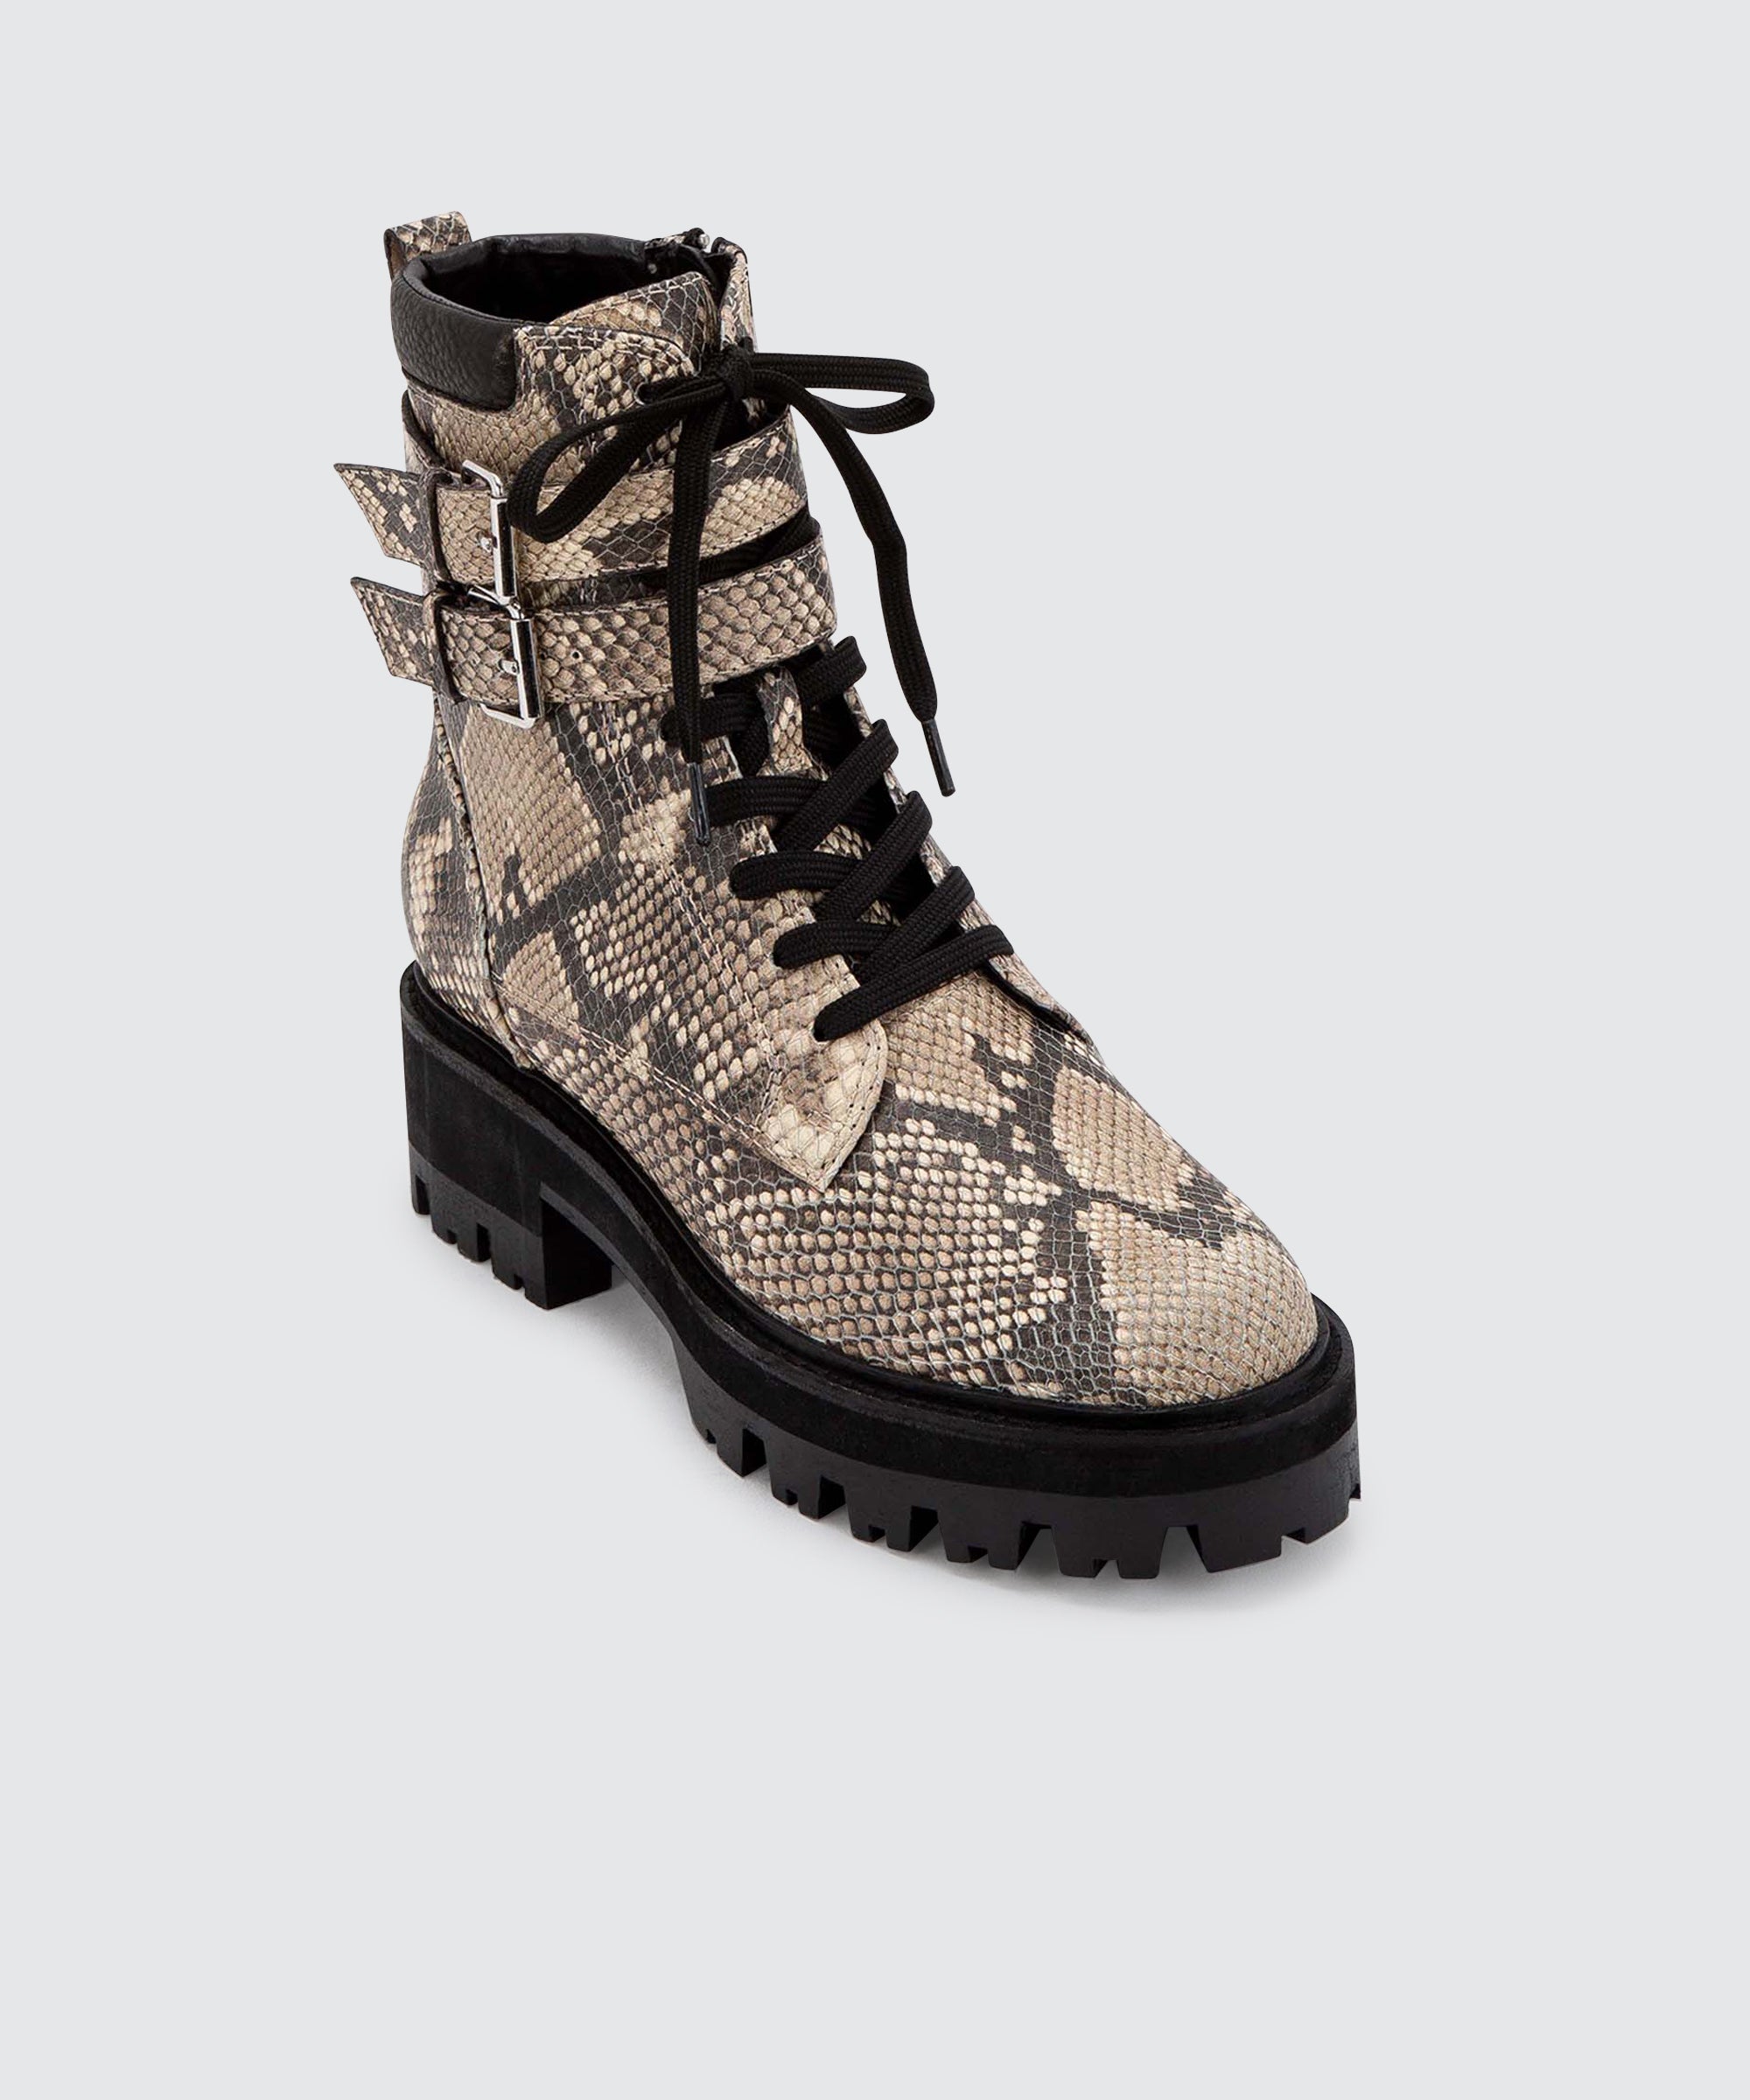 dolce vita snake boots